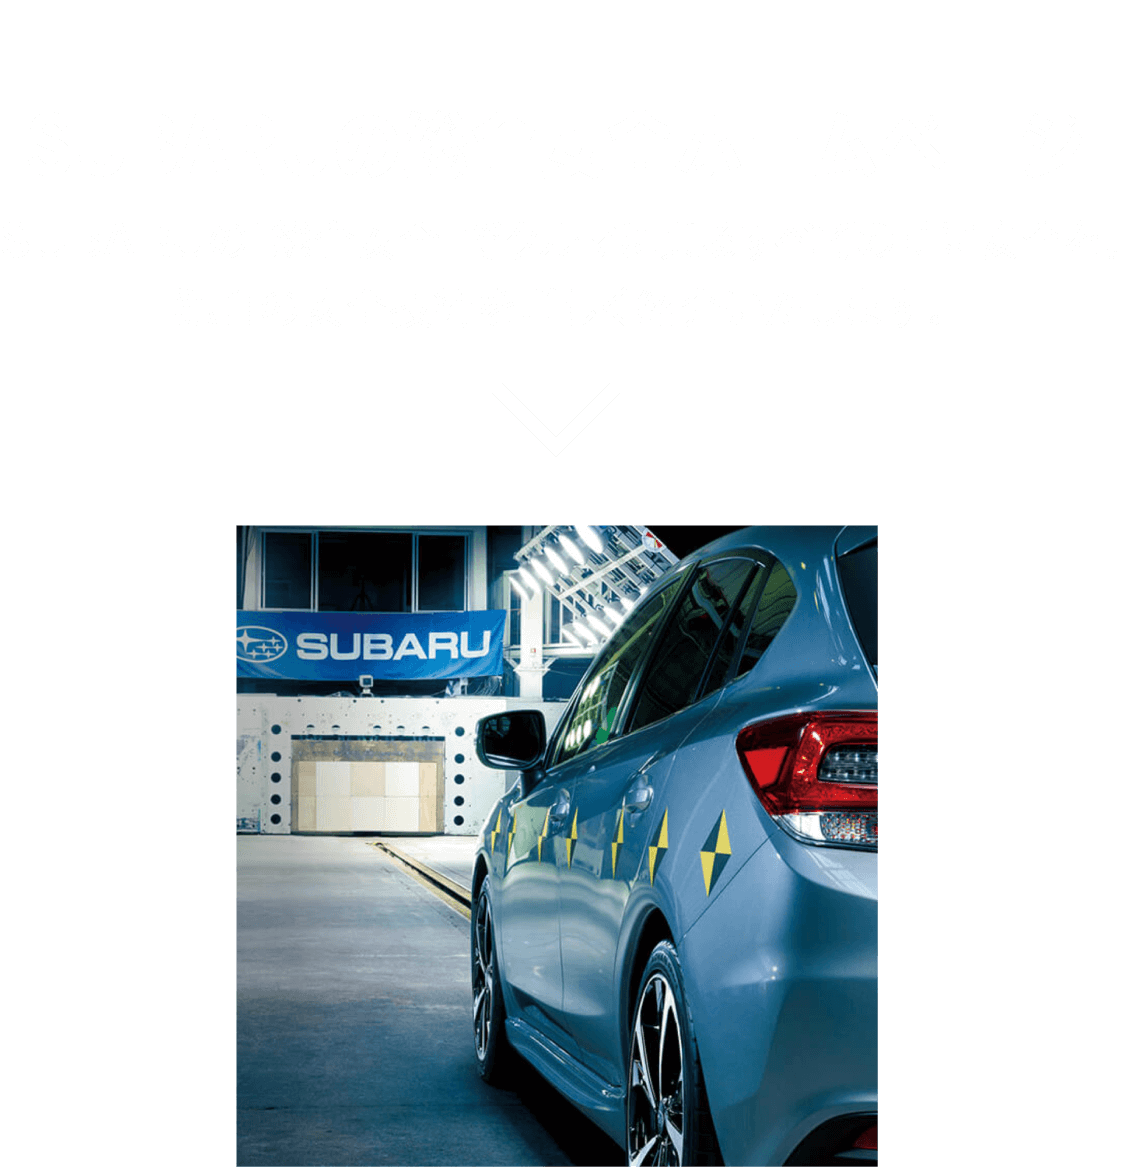 SUBARUの総合安全ホームページ。SUBARUの「総合安全」でクルマに乗るすべての時に安全を。独自の安全技術を詳しく紹介いたします。